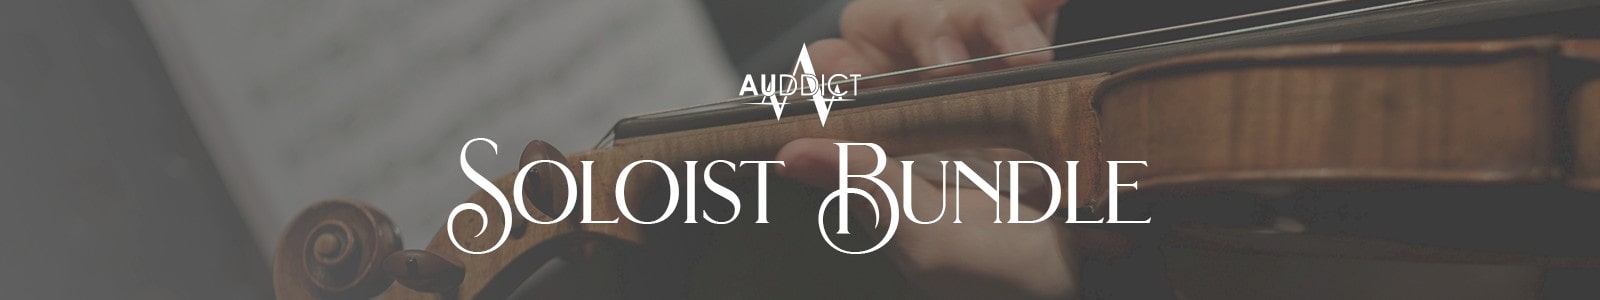 Auddict Soloist Bundle